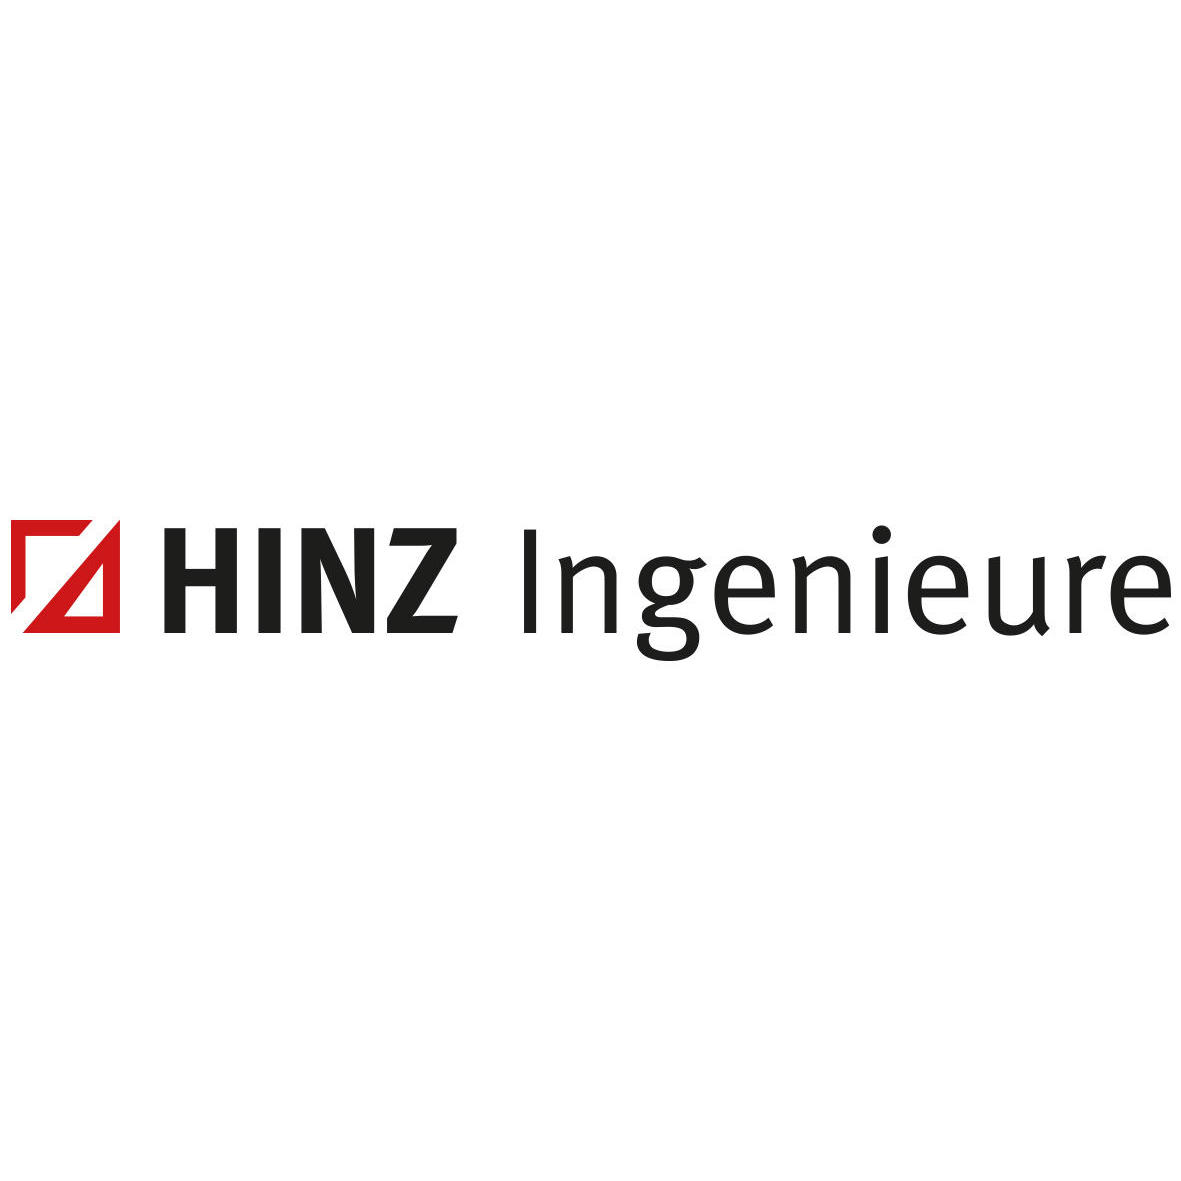 HINZ Ingenieure GmbH in Münster - Logo